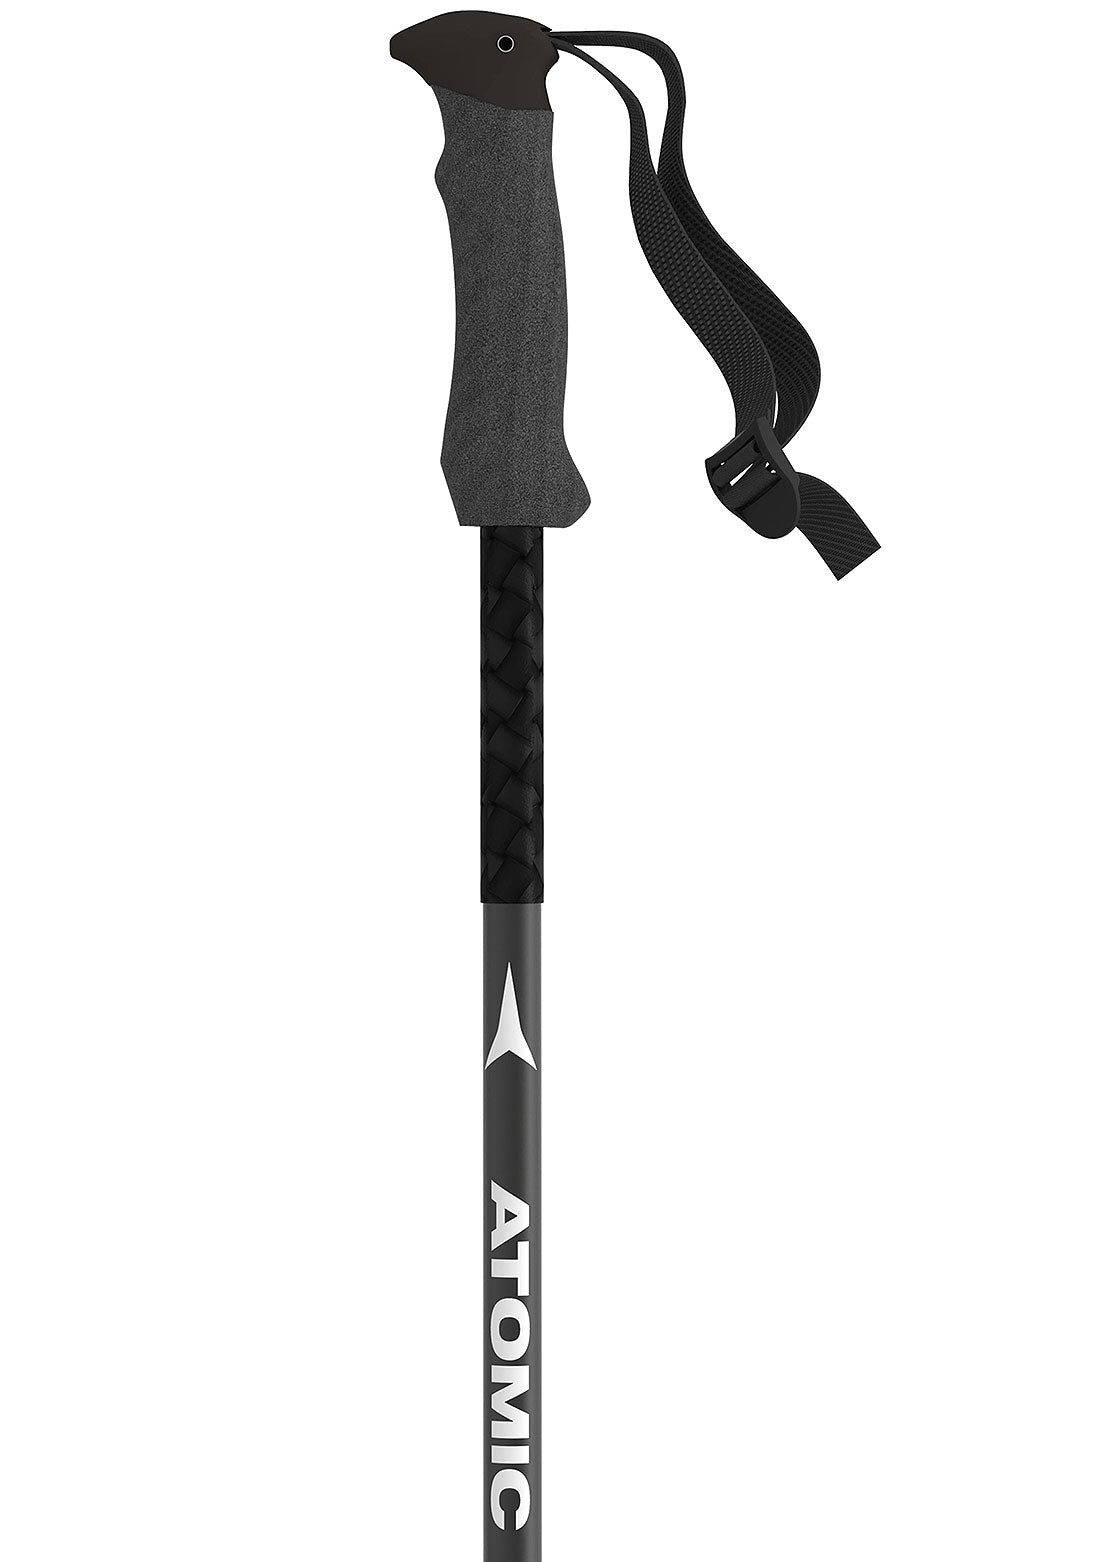 Atomic Unisex BCT Touring Ski Poles Black/Silver